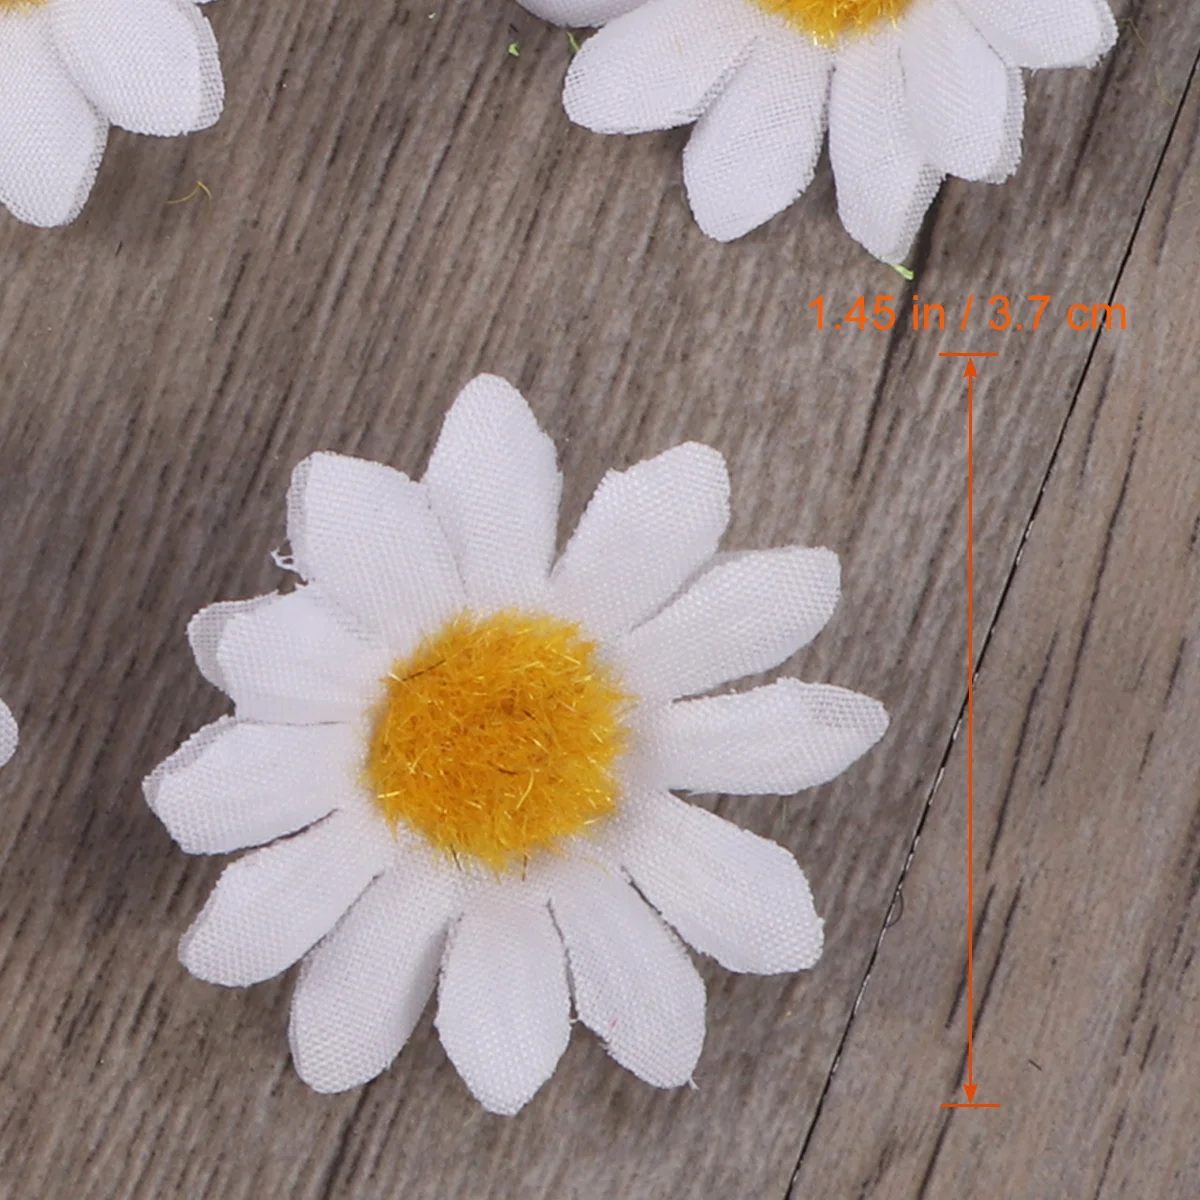 100 adet Yapay Papatya Kumaş Papatya Çiçek Yapay Papatya Krizantem Papatya Çiçekler Düğün Ev Dekorasyon için (Beyaz ) Görüntü 1